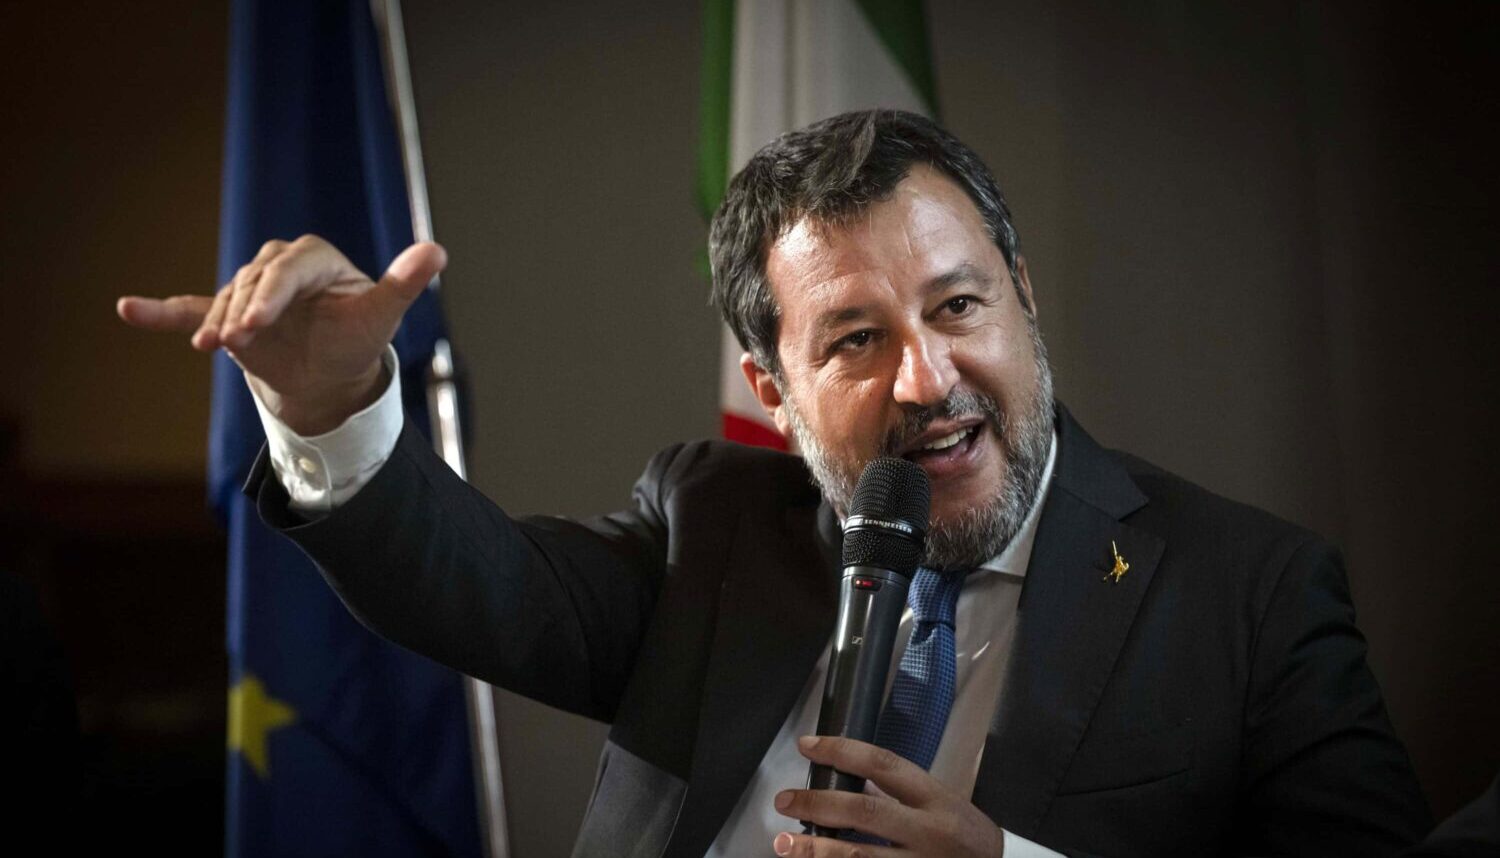 Salvini controcorrente sul caso Salis, per lui il vero problema è che faccia la maestra in Italia